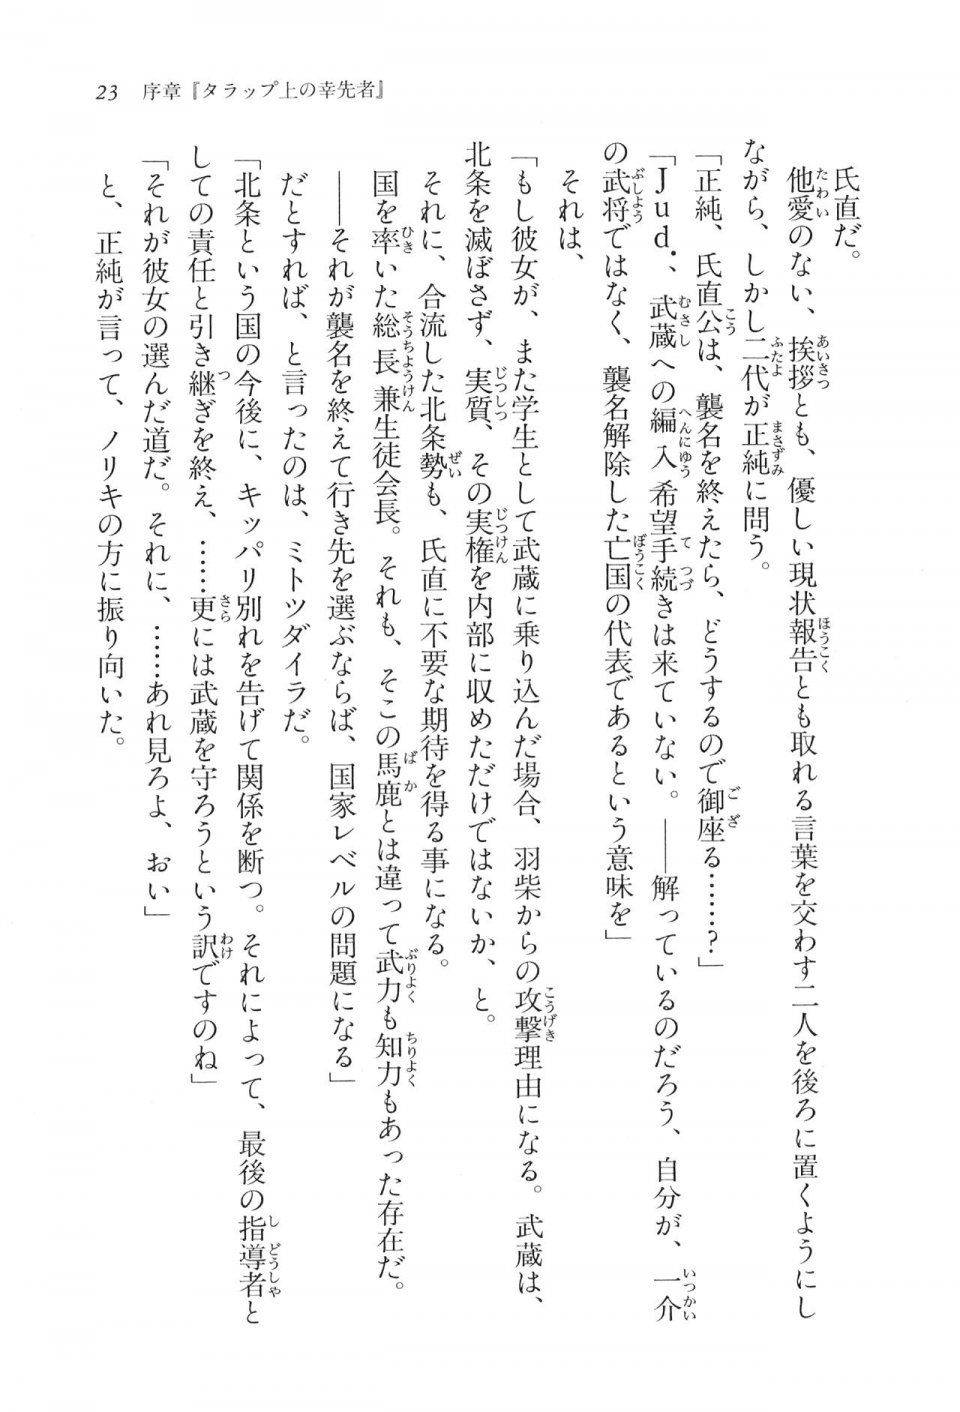 Kyoukai Senjou no Horizon LN Vol 16(7A) - Photo #23